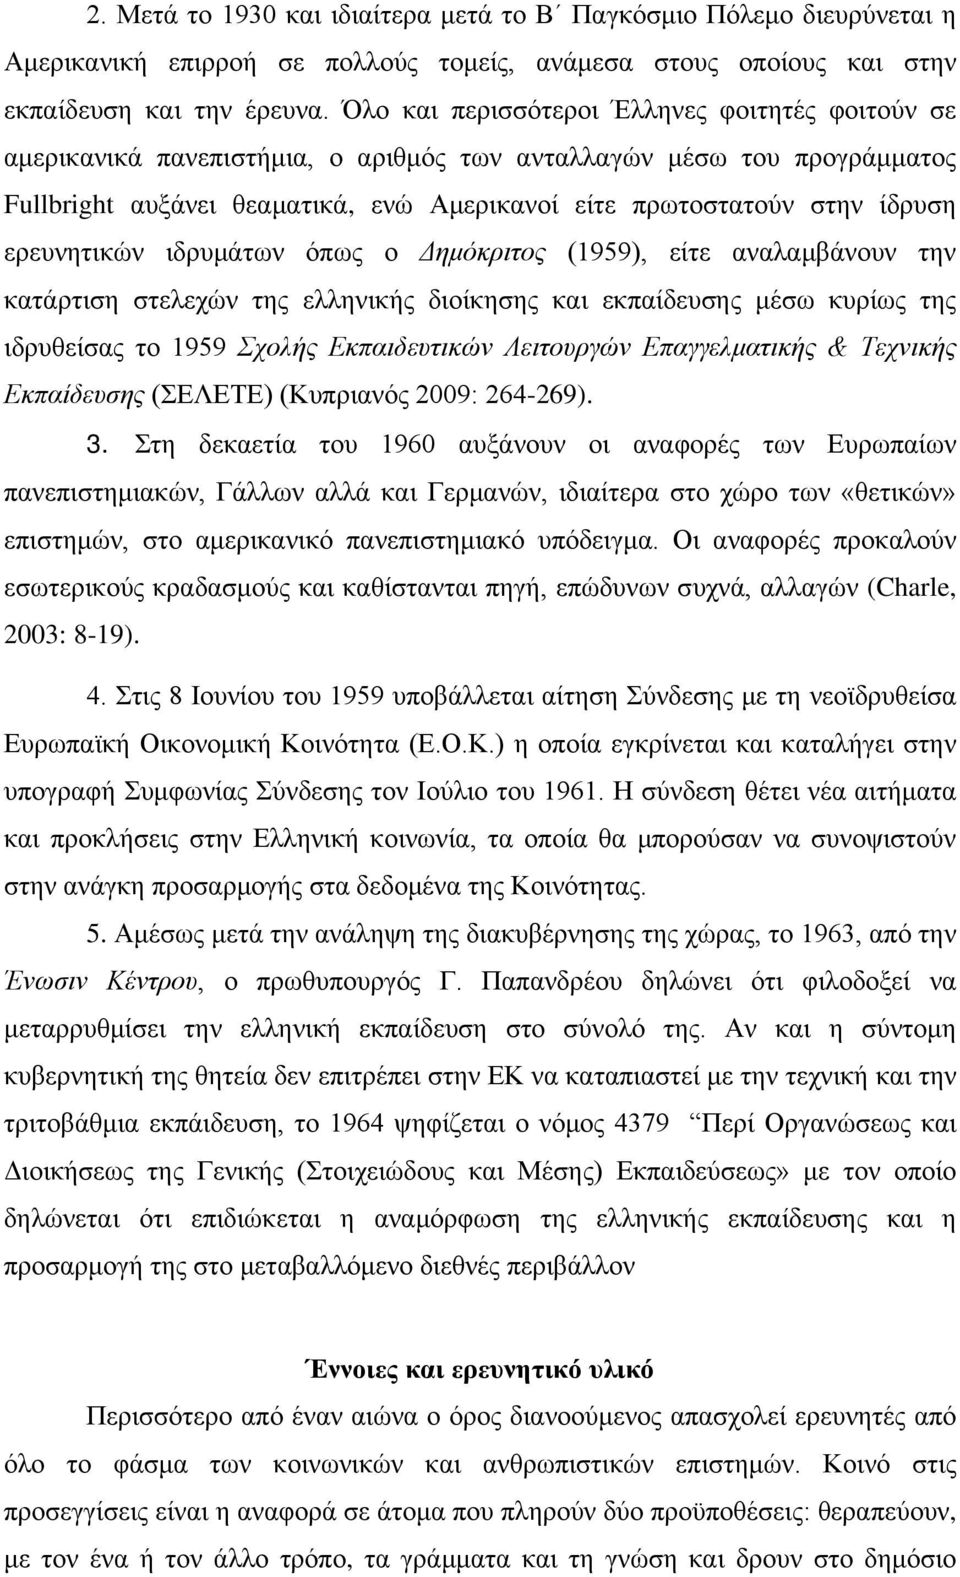 ερευνητικών ιδρυμάτων όπως ο Δημόκριτος (1959), είτε αναλαμβάνουν την κατάρτιση στελεχών της ελληνικής διοίκησης και εκπαίδευσης μέσω κυρίως της ιδρυθείσας το 1959 Σχολής Εκπαιδευτικών Λειτουργών